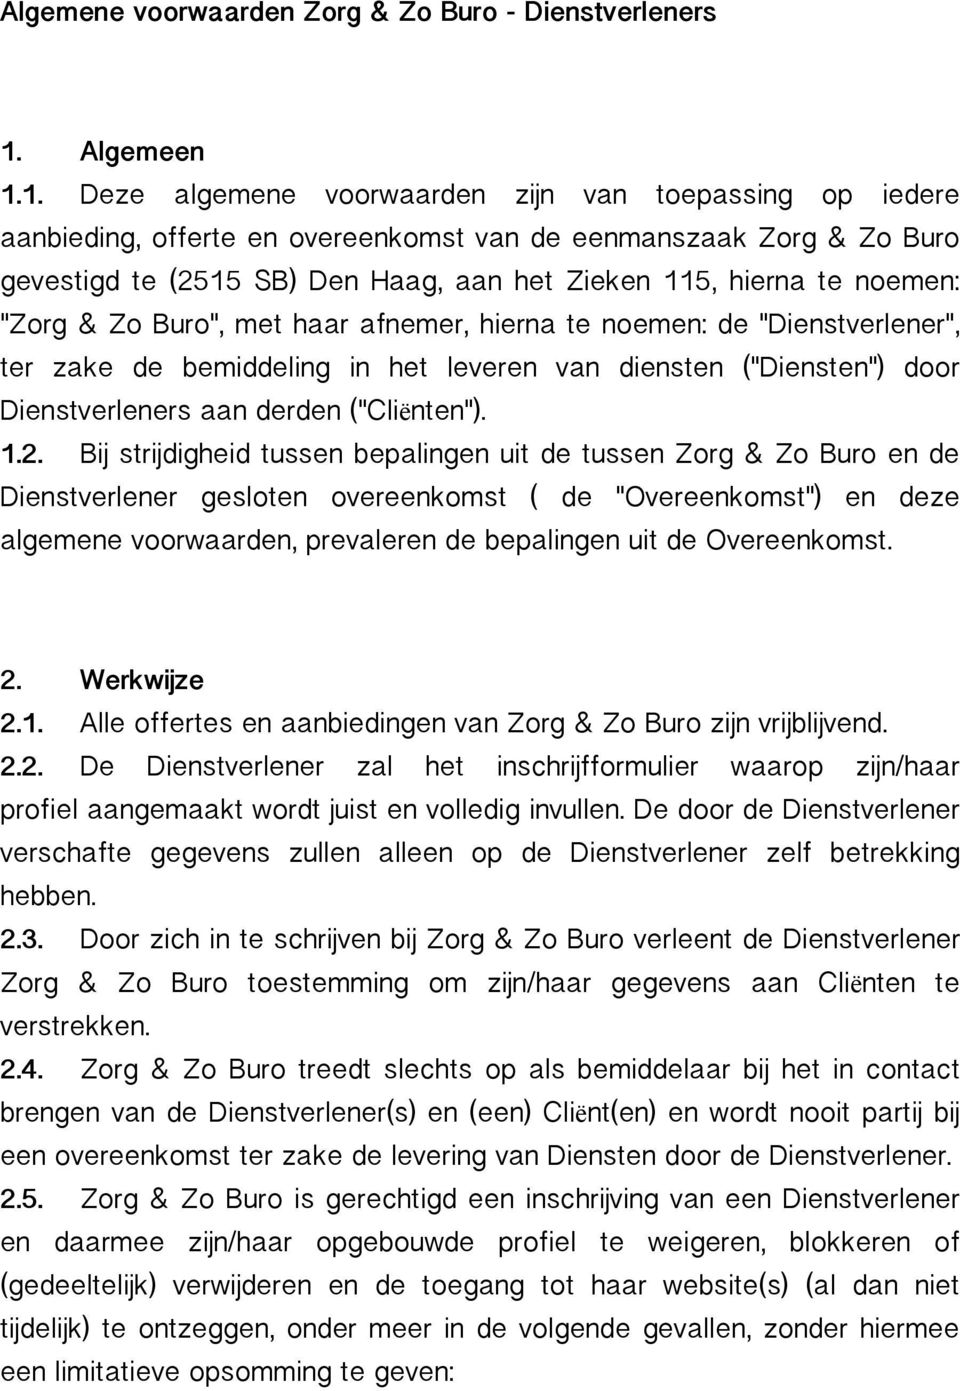 1. Deze algemene voorwaarden zijn van toepassing op iedere aanbieding, offerte en overeenkomst van de eenmanszaak Zorg & Zo Buro gevestigd te (2515 SB) Den Haag, aan het Zieken 115, hierna te noemen: